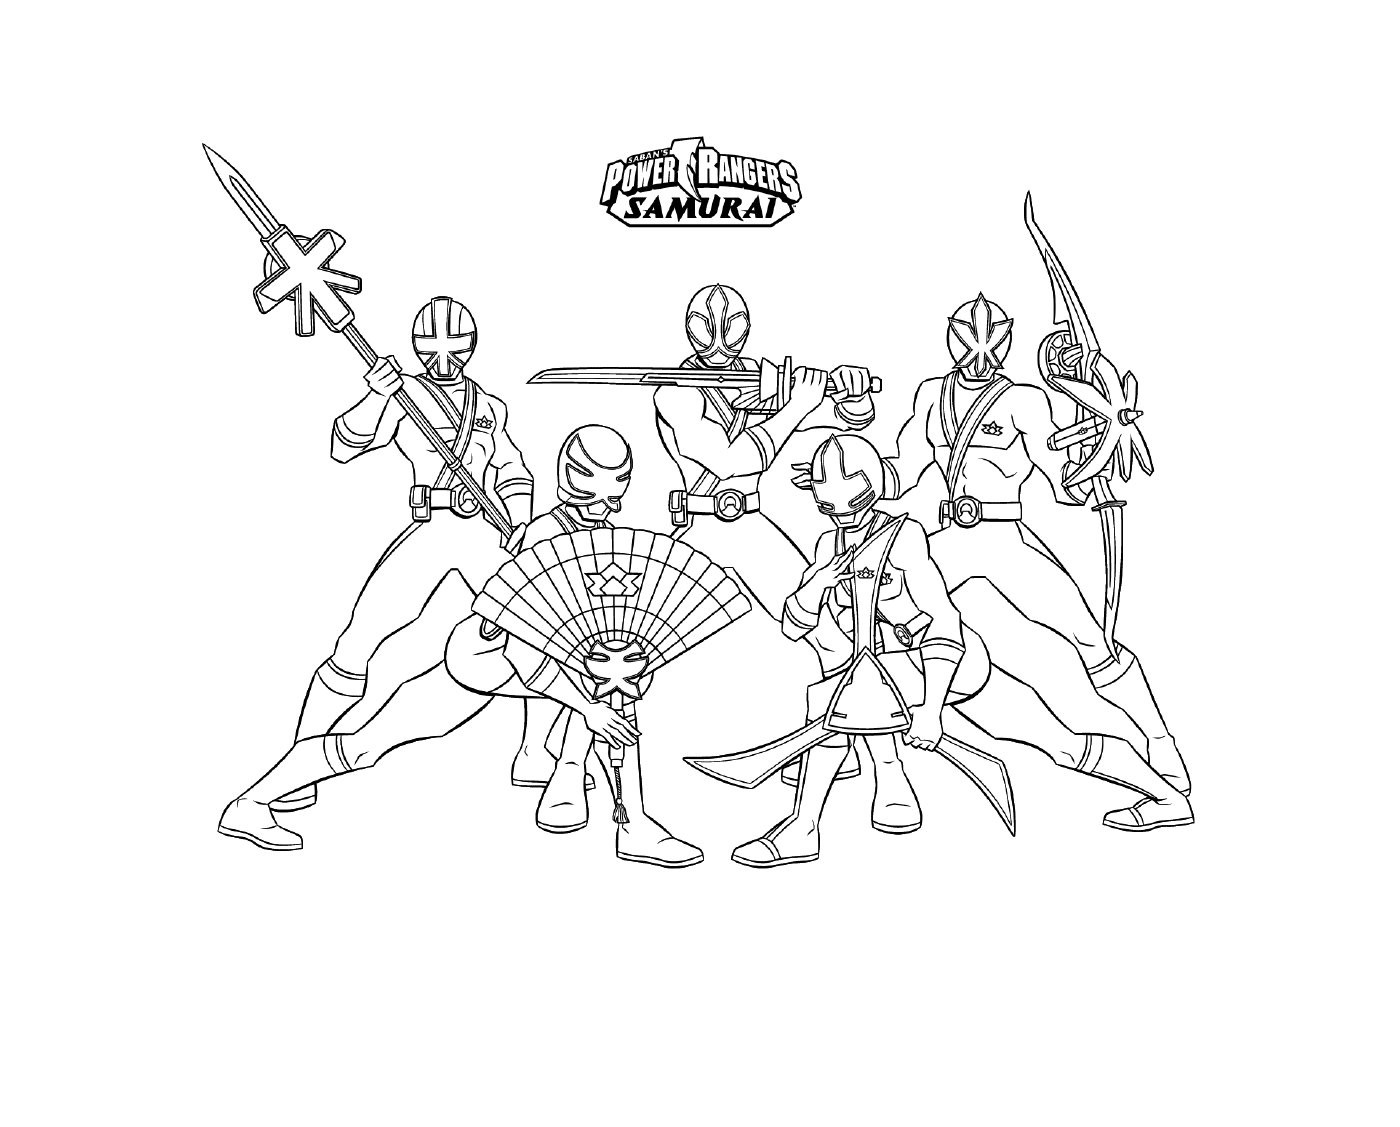  Equipo de Power Rangers de Samurai 